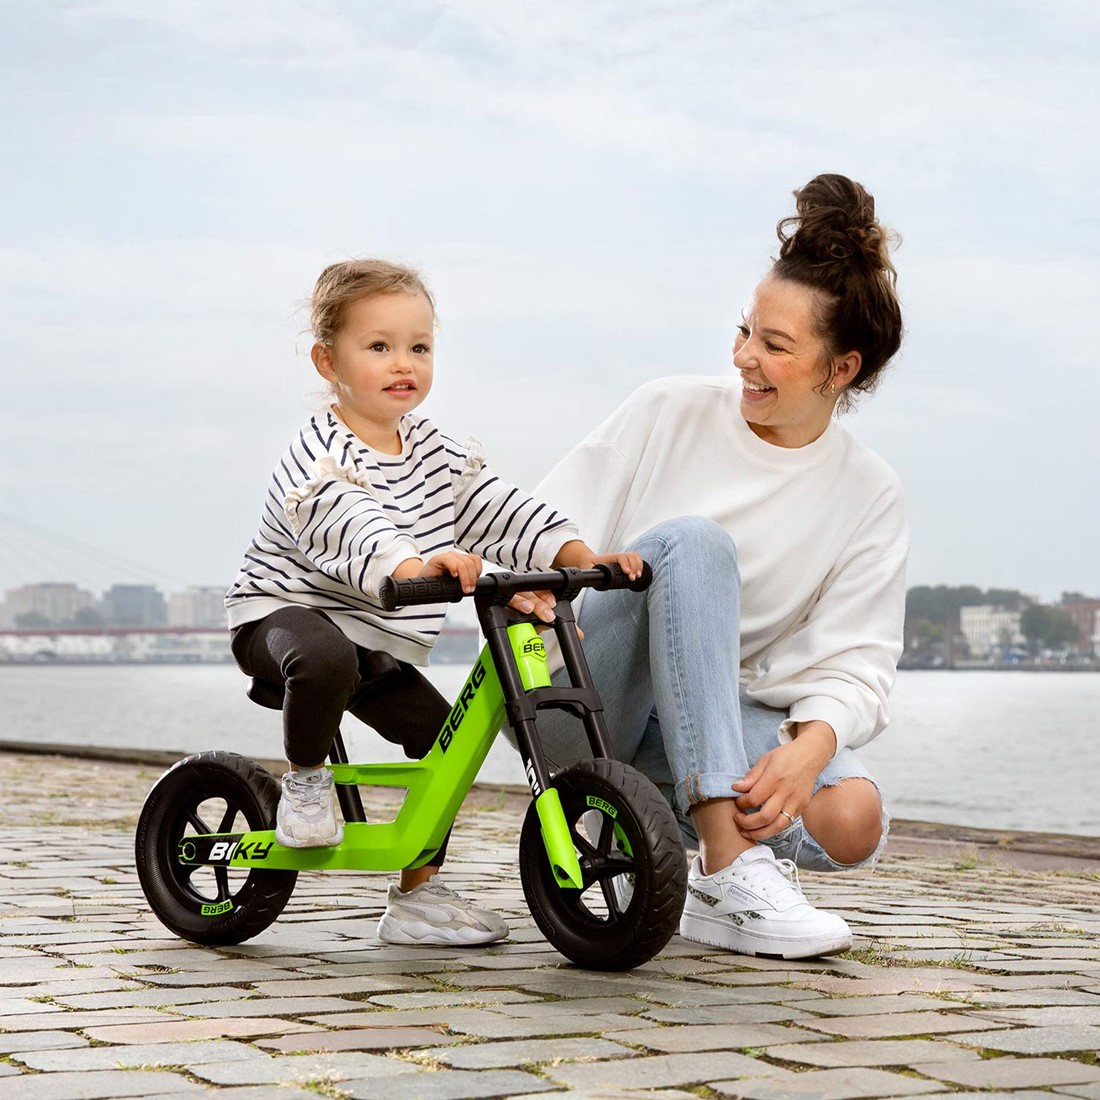 Doorbraak Namens Paleis BERG Biky Mini loopfiets - groen bij Buitengoed